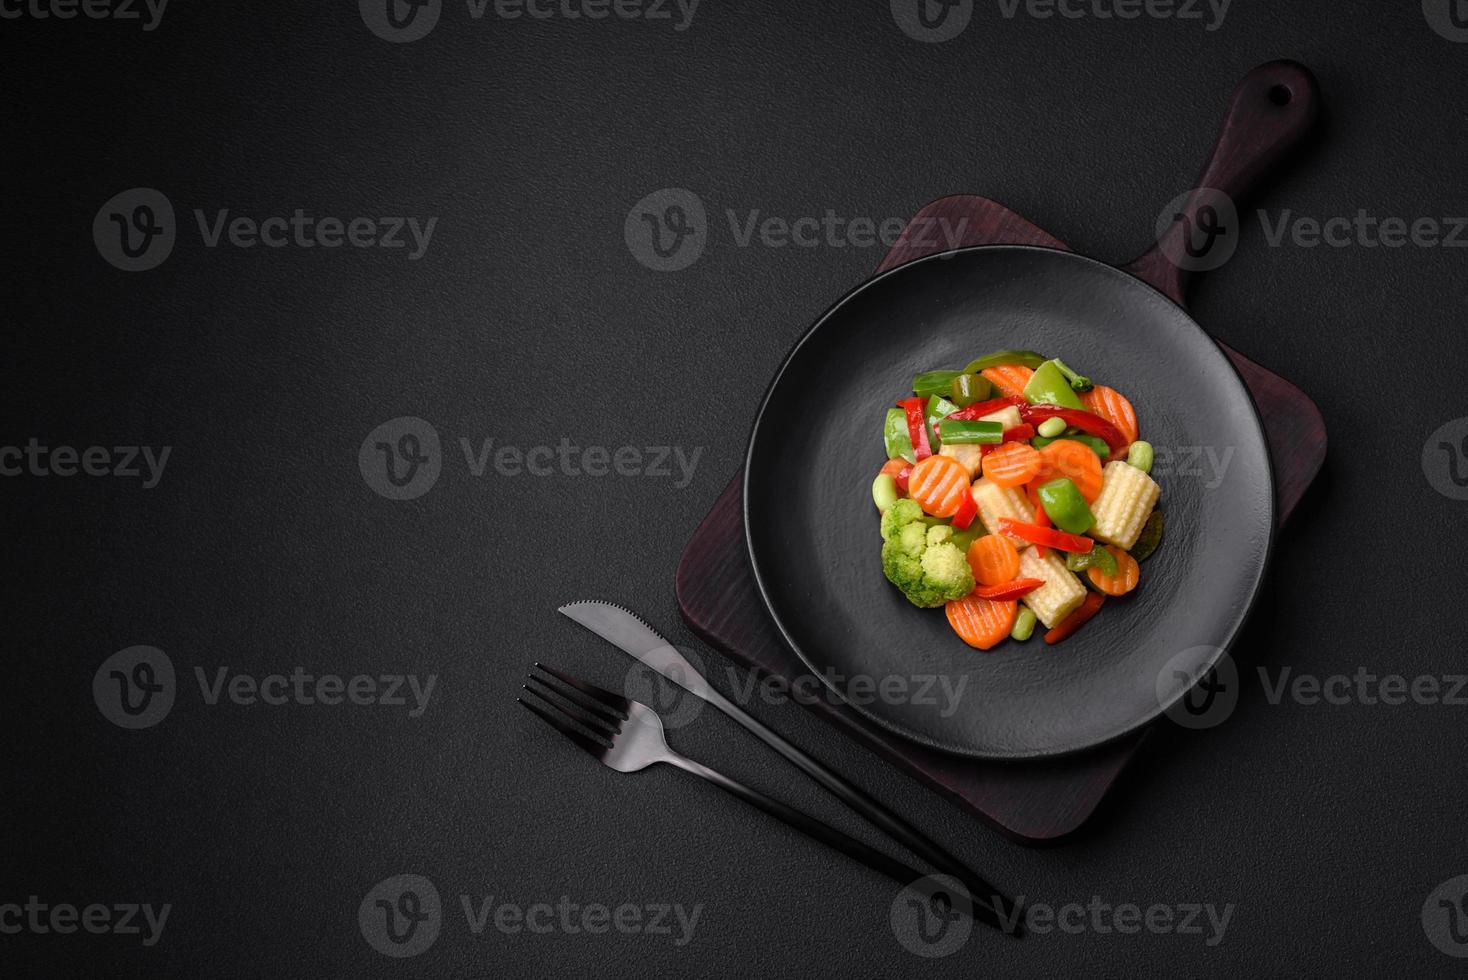 delicioso jugoso brócoli verduras, zanahorias, espárragos frijoles y campana pimientos foto